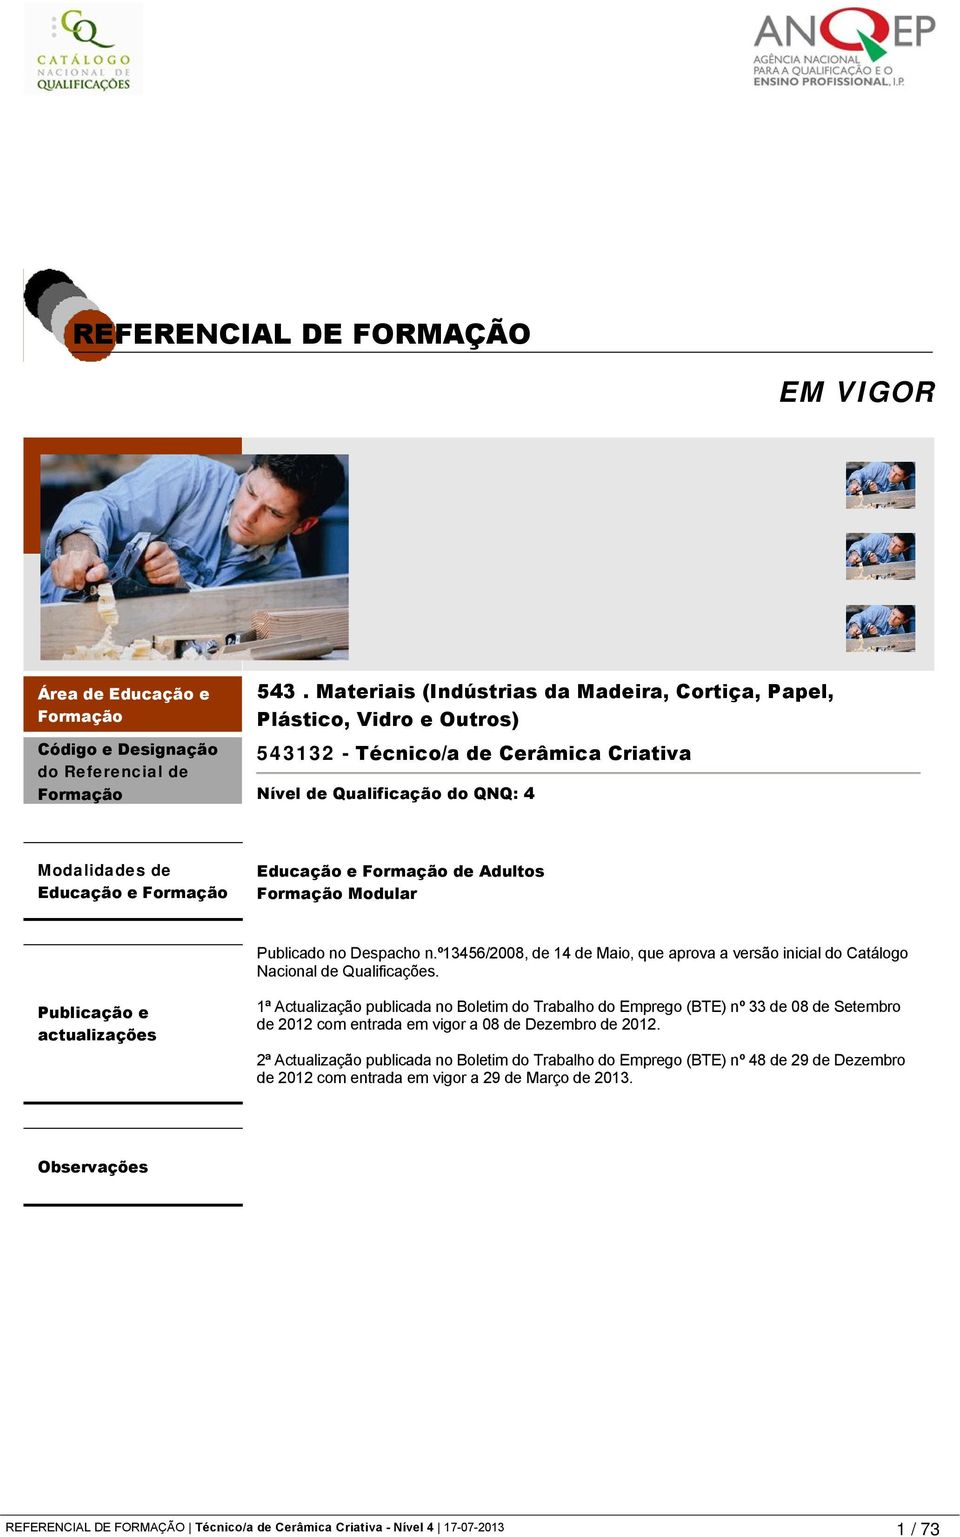 Formação de Adultos Formação Modular Publicado no Despacho n.º13456/2008, de 14 de Maio, que aprova a versão inicial do Catálogo Nacional de Qualificações.